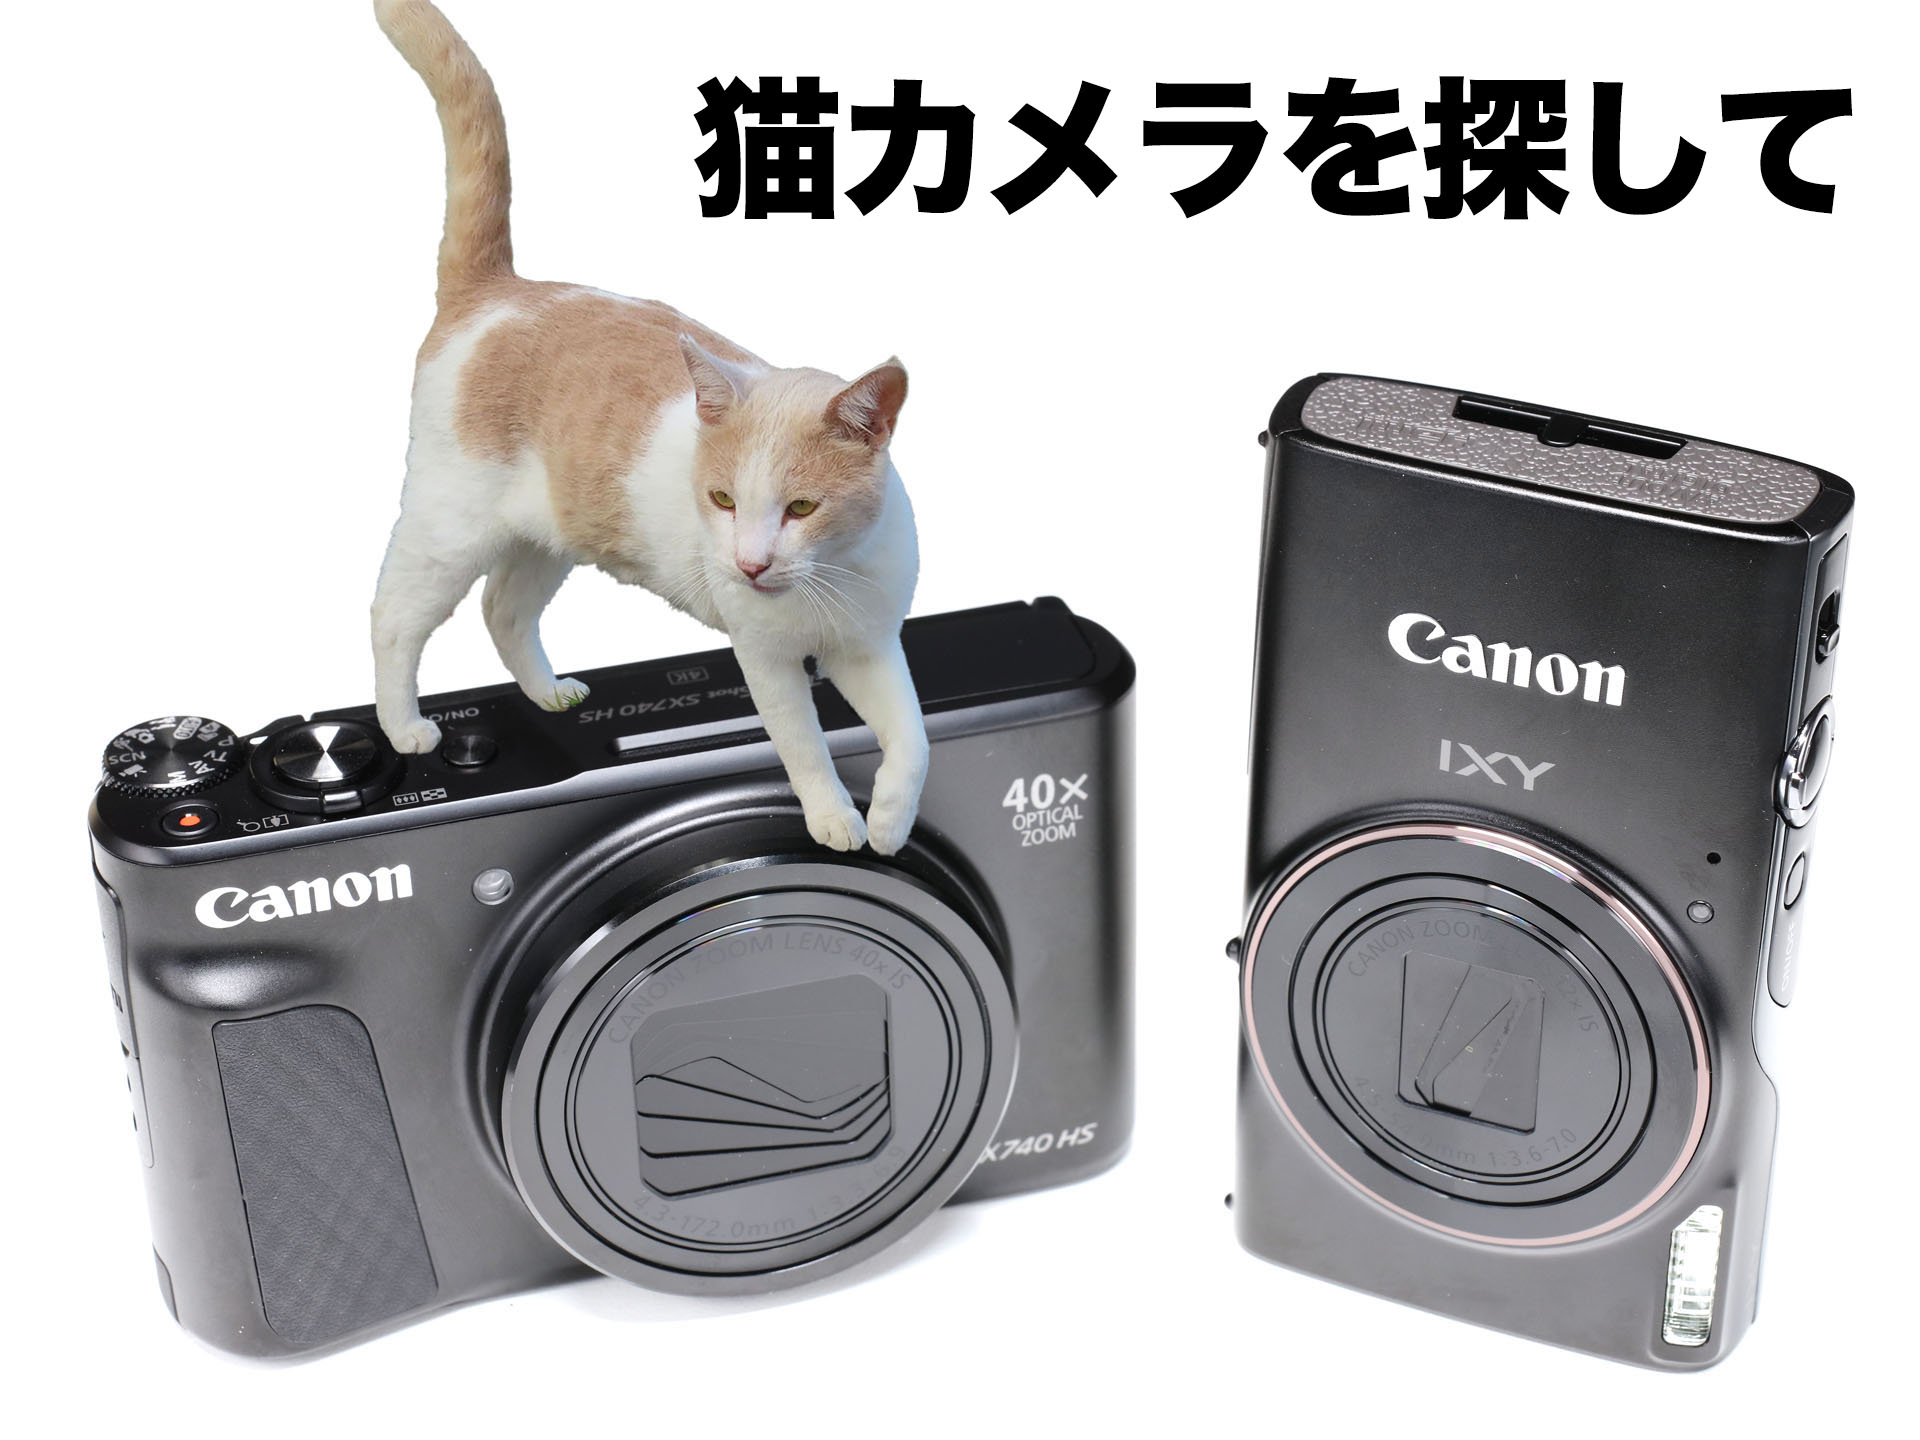 猫カメラに最適なのはどっちだ!? キヤノンのコンデジ2台を衝動買い